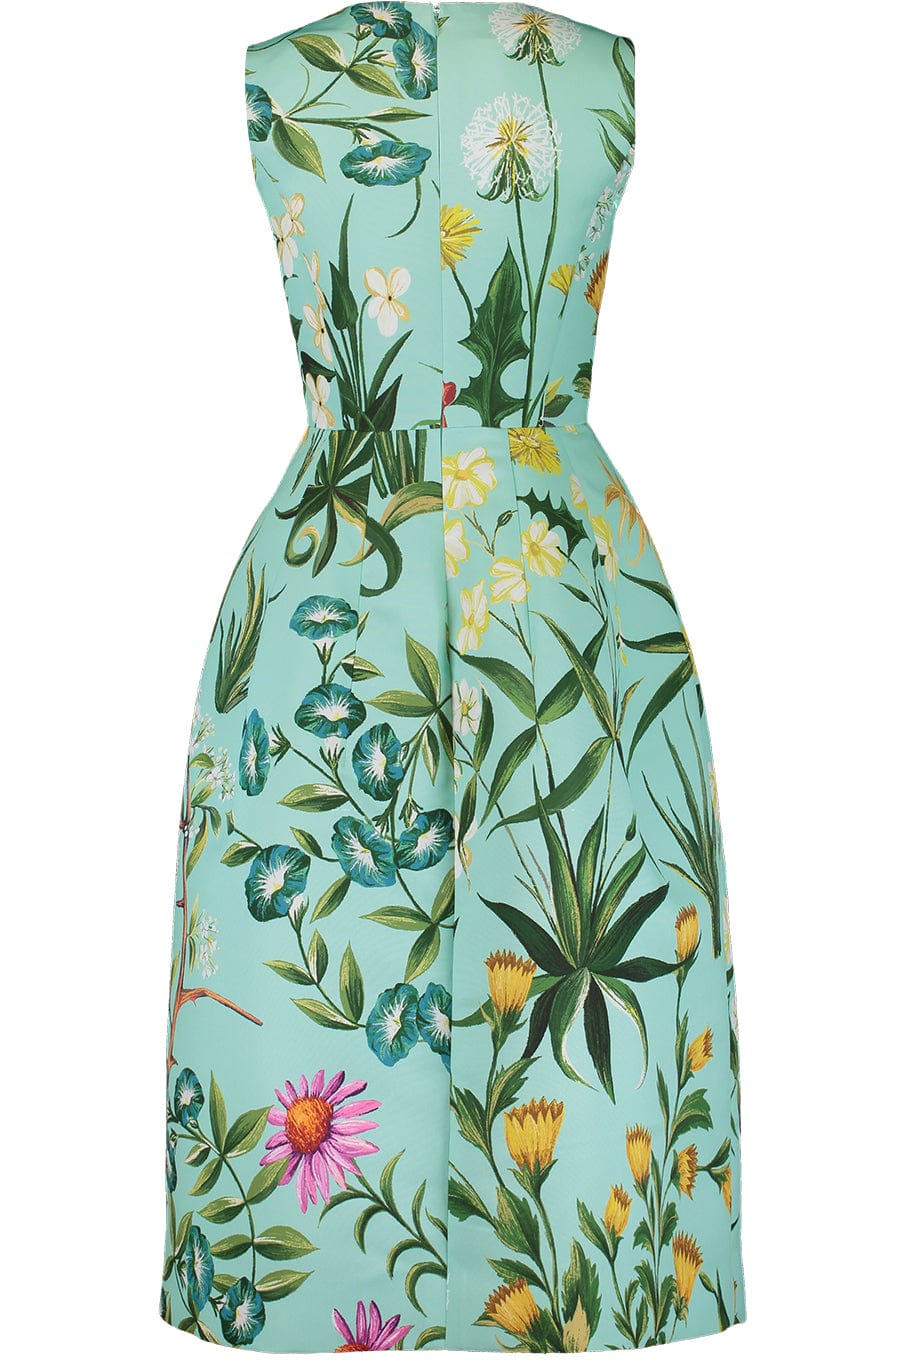 Oscar de la Renta Sleeveless Floral Tapestry Faille Dress in Mint Multi